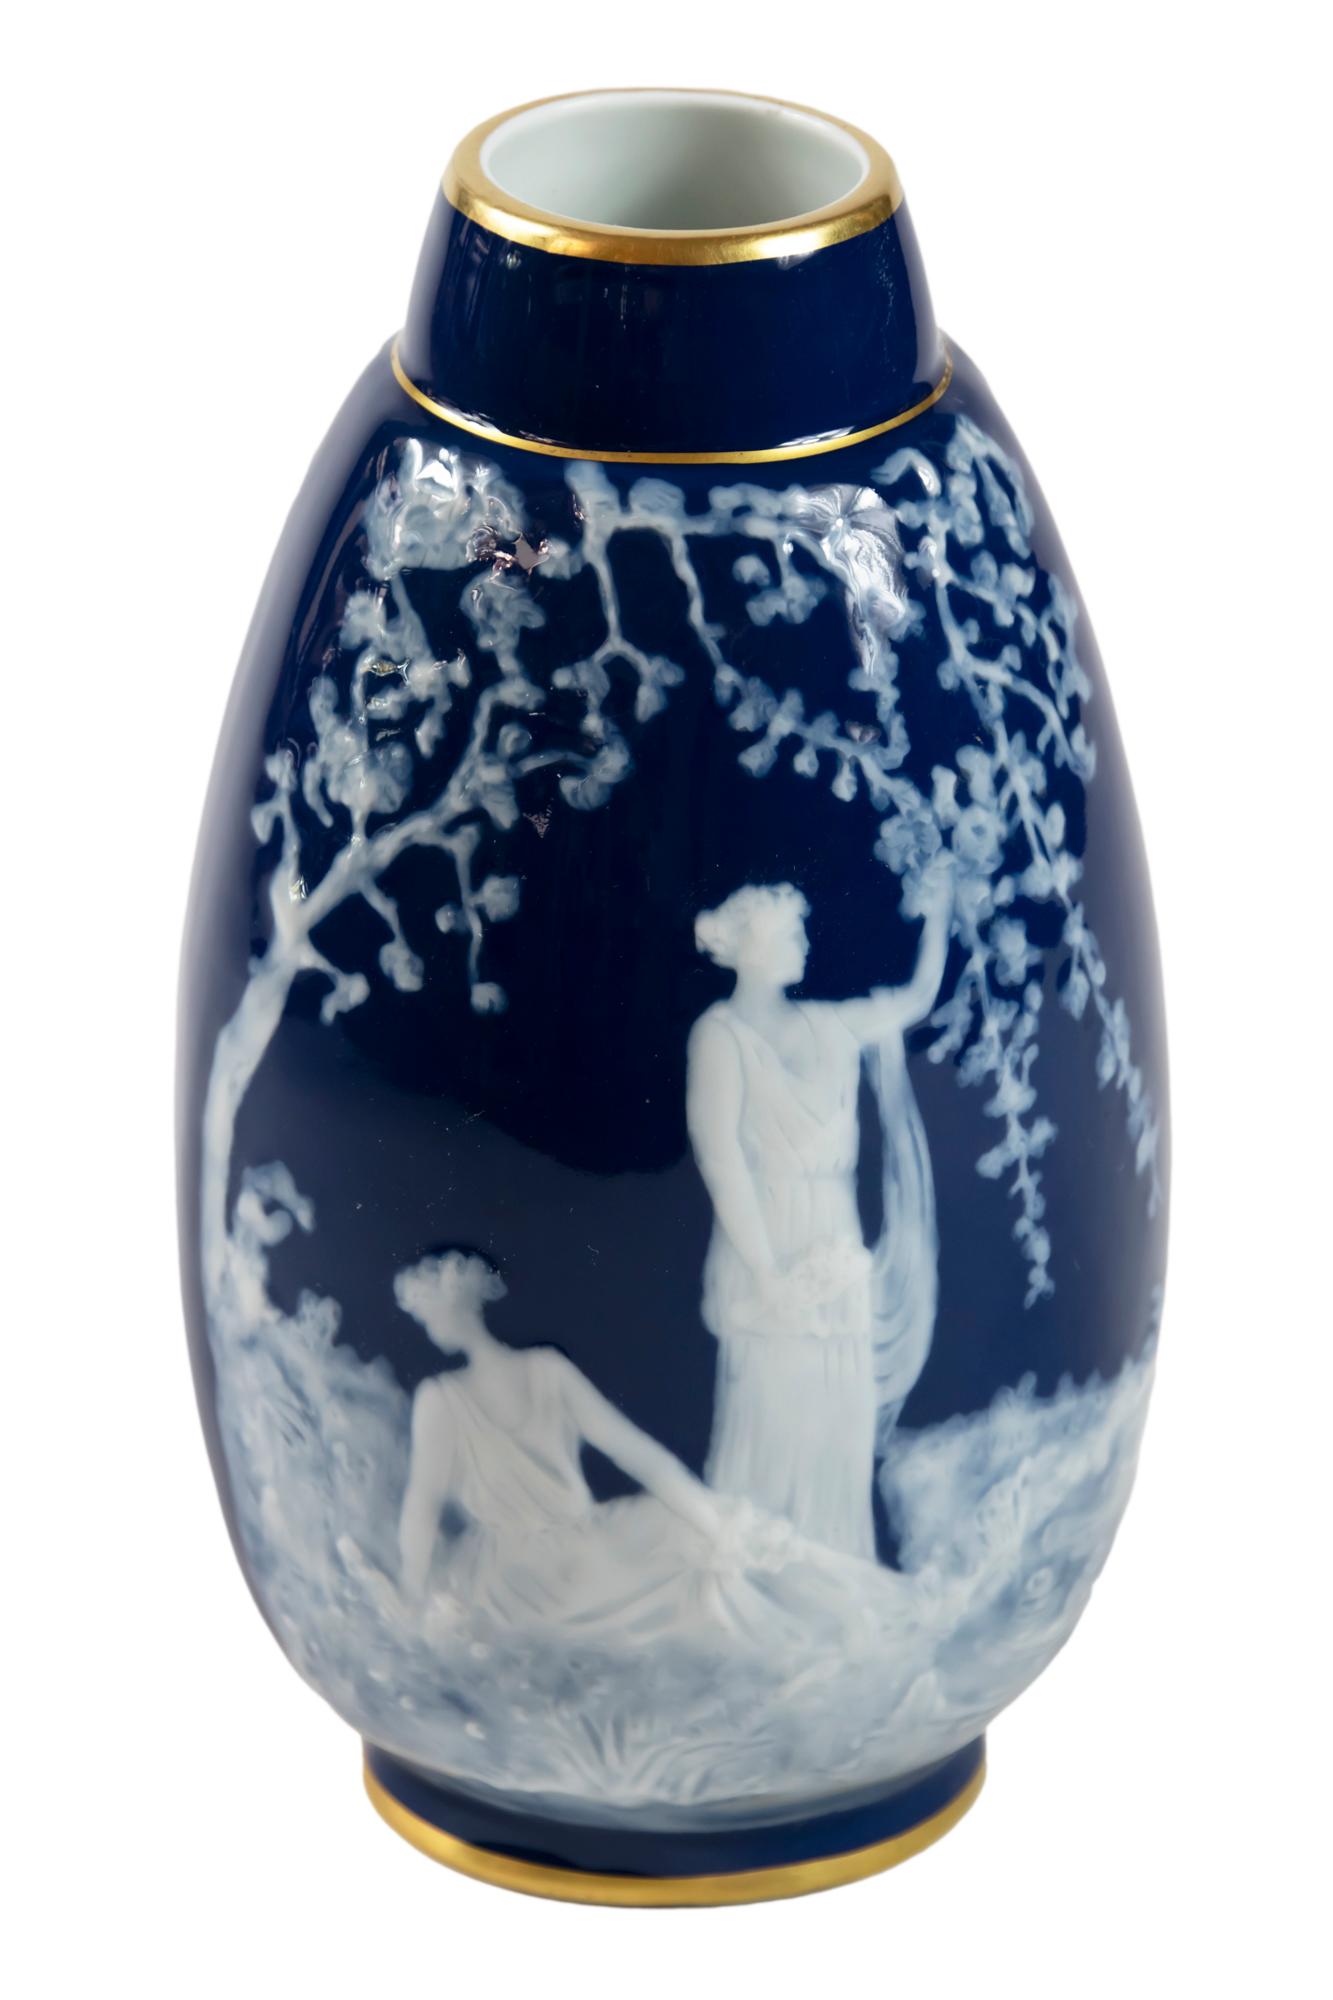 Vase de Limoges à fond bleu cobalt et technique du pate-sur-pate avec scène de personnages féminins.
Signé Marcel Chaufriasse Limoges.
Très bon état vintage.